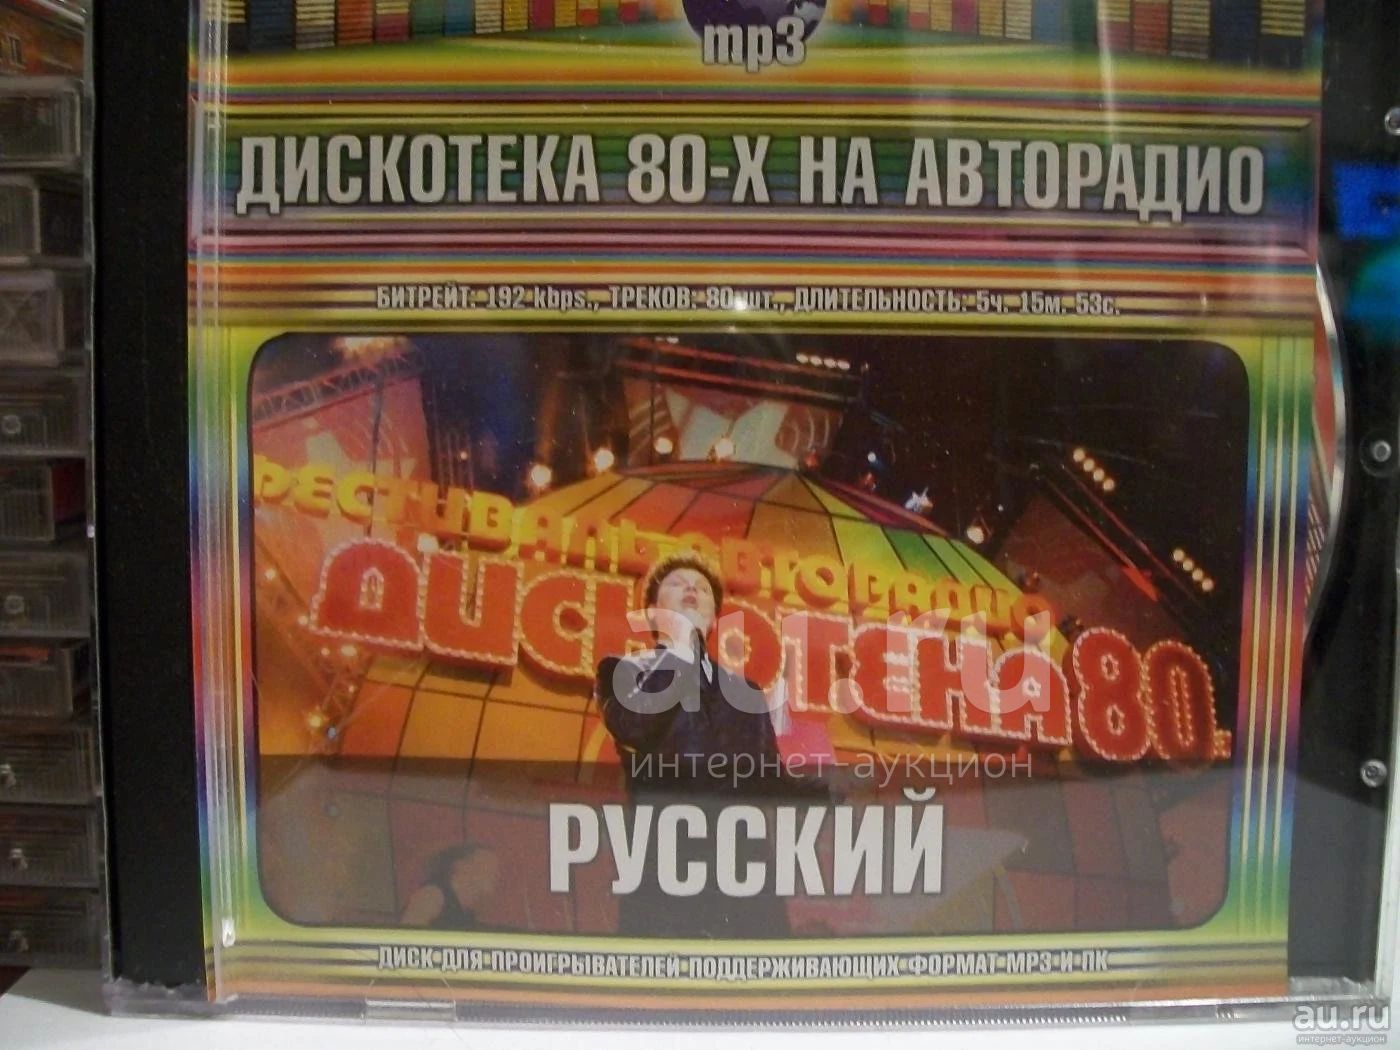 Русская mp 3. CD диск Авторадио дискотека 80-х. Авторадио дискотека 80 диск. Дискотека 90-х на Авторадио 2005. Двд диски проигрыватели Авторадио дискотека 80 -90.